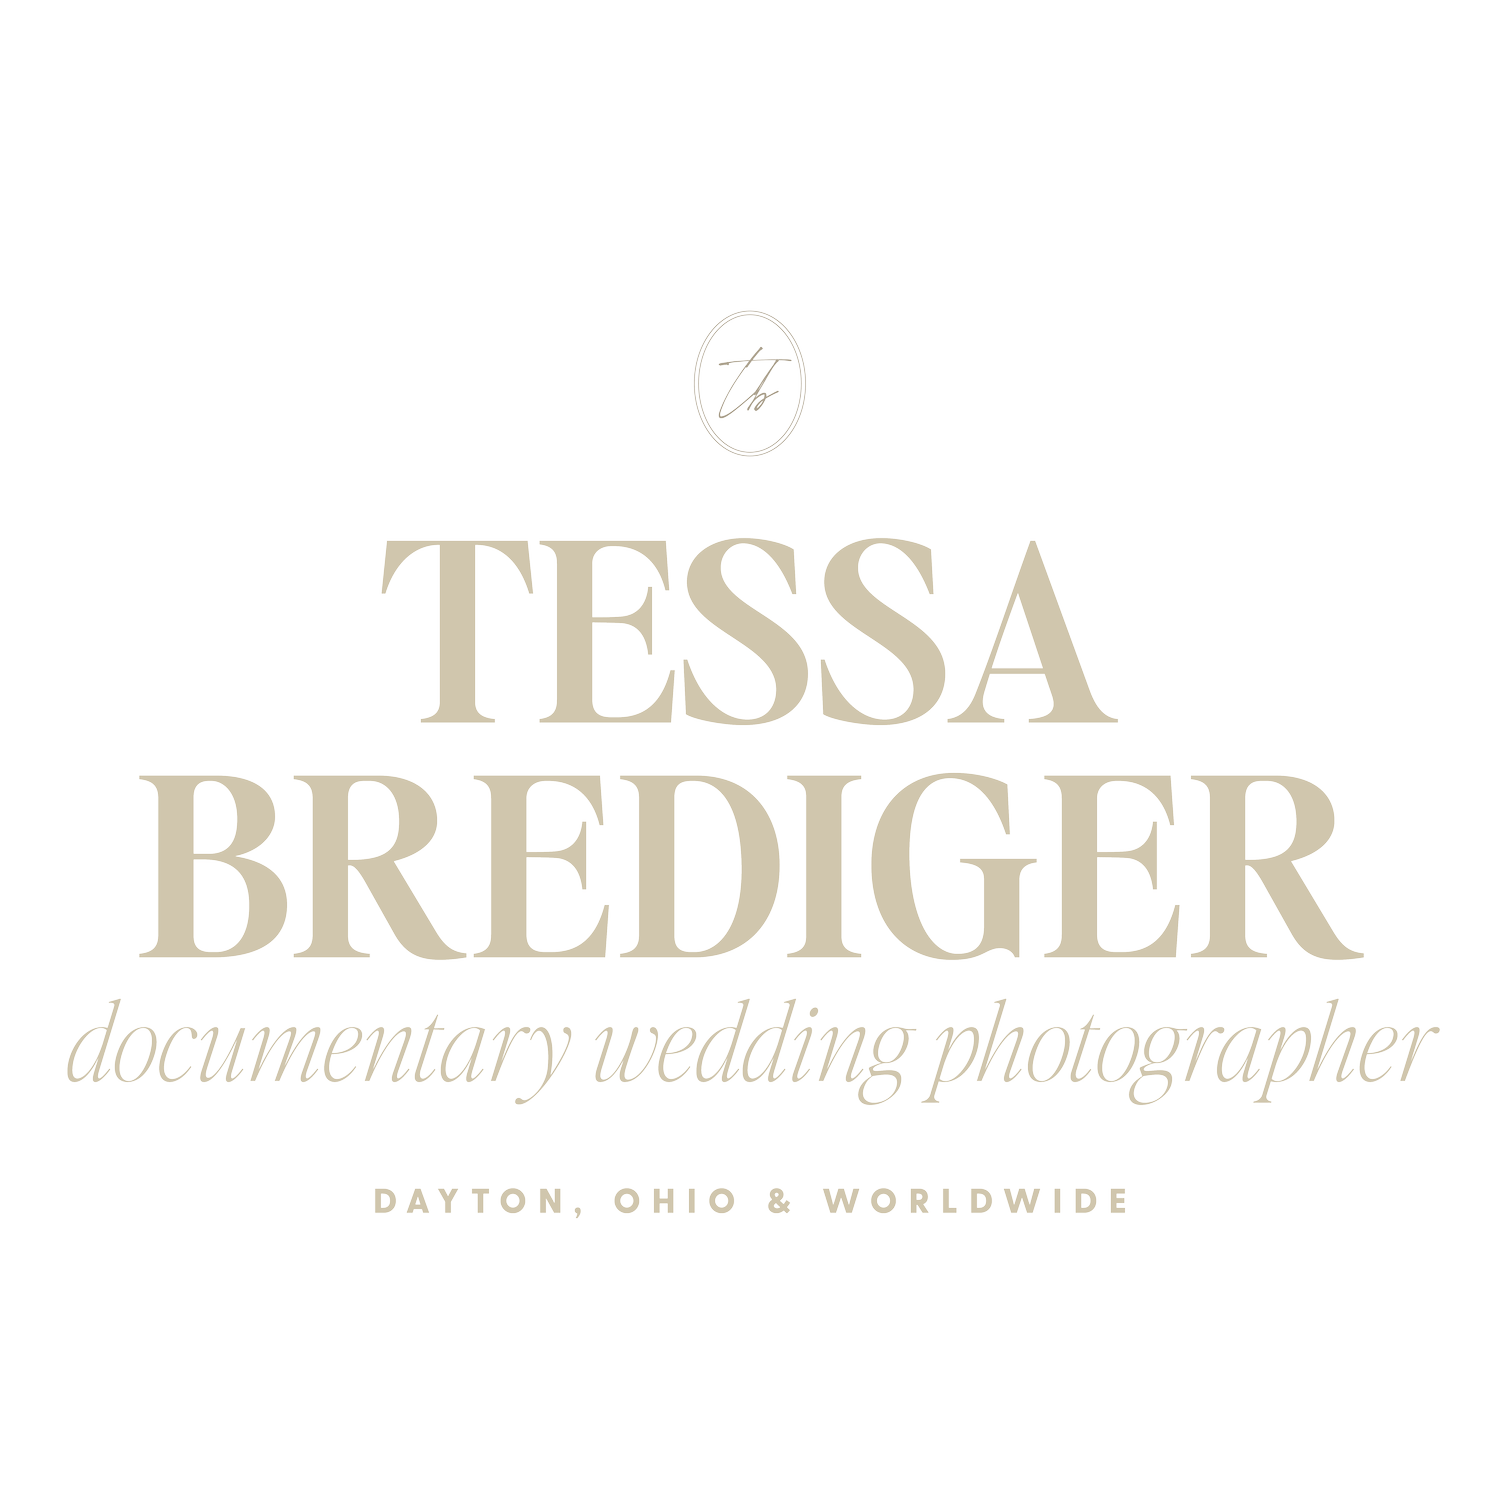 Tessa N. Brediger